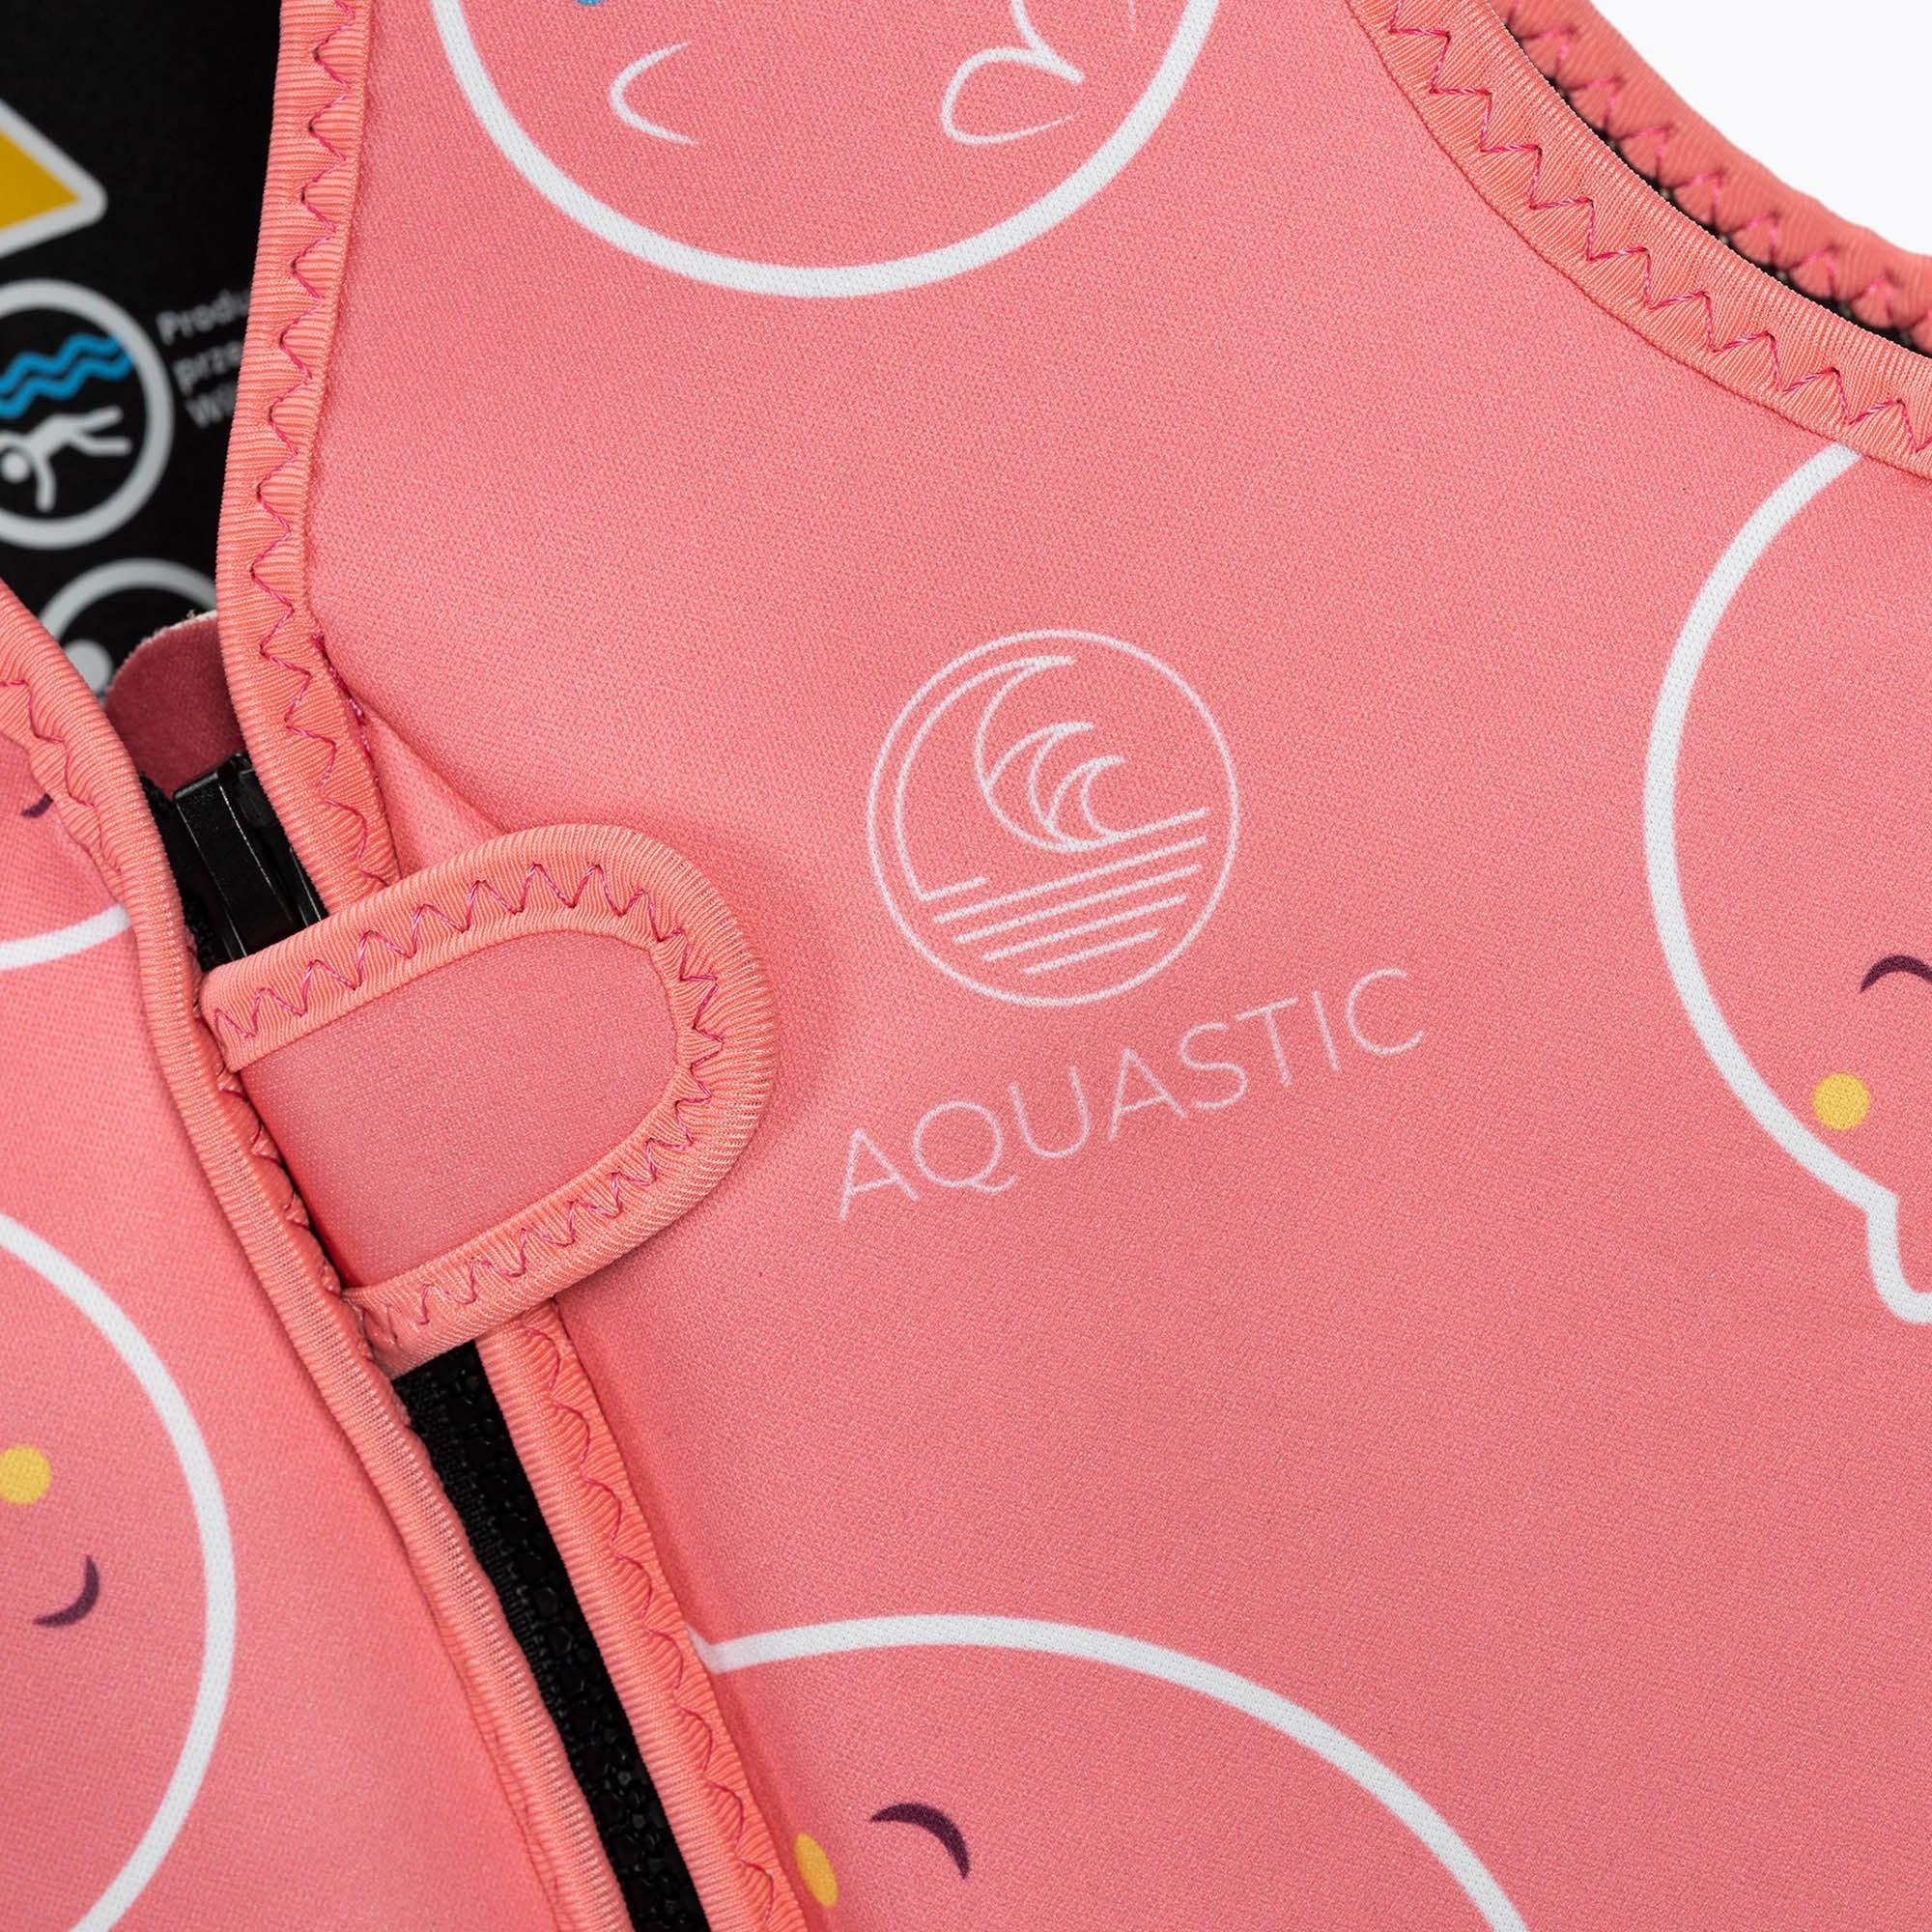 Aquastic: kamizelka asekuracyjna dla dzieci Różowa - Noski Noski